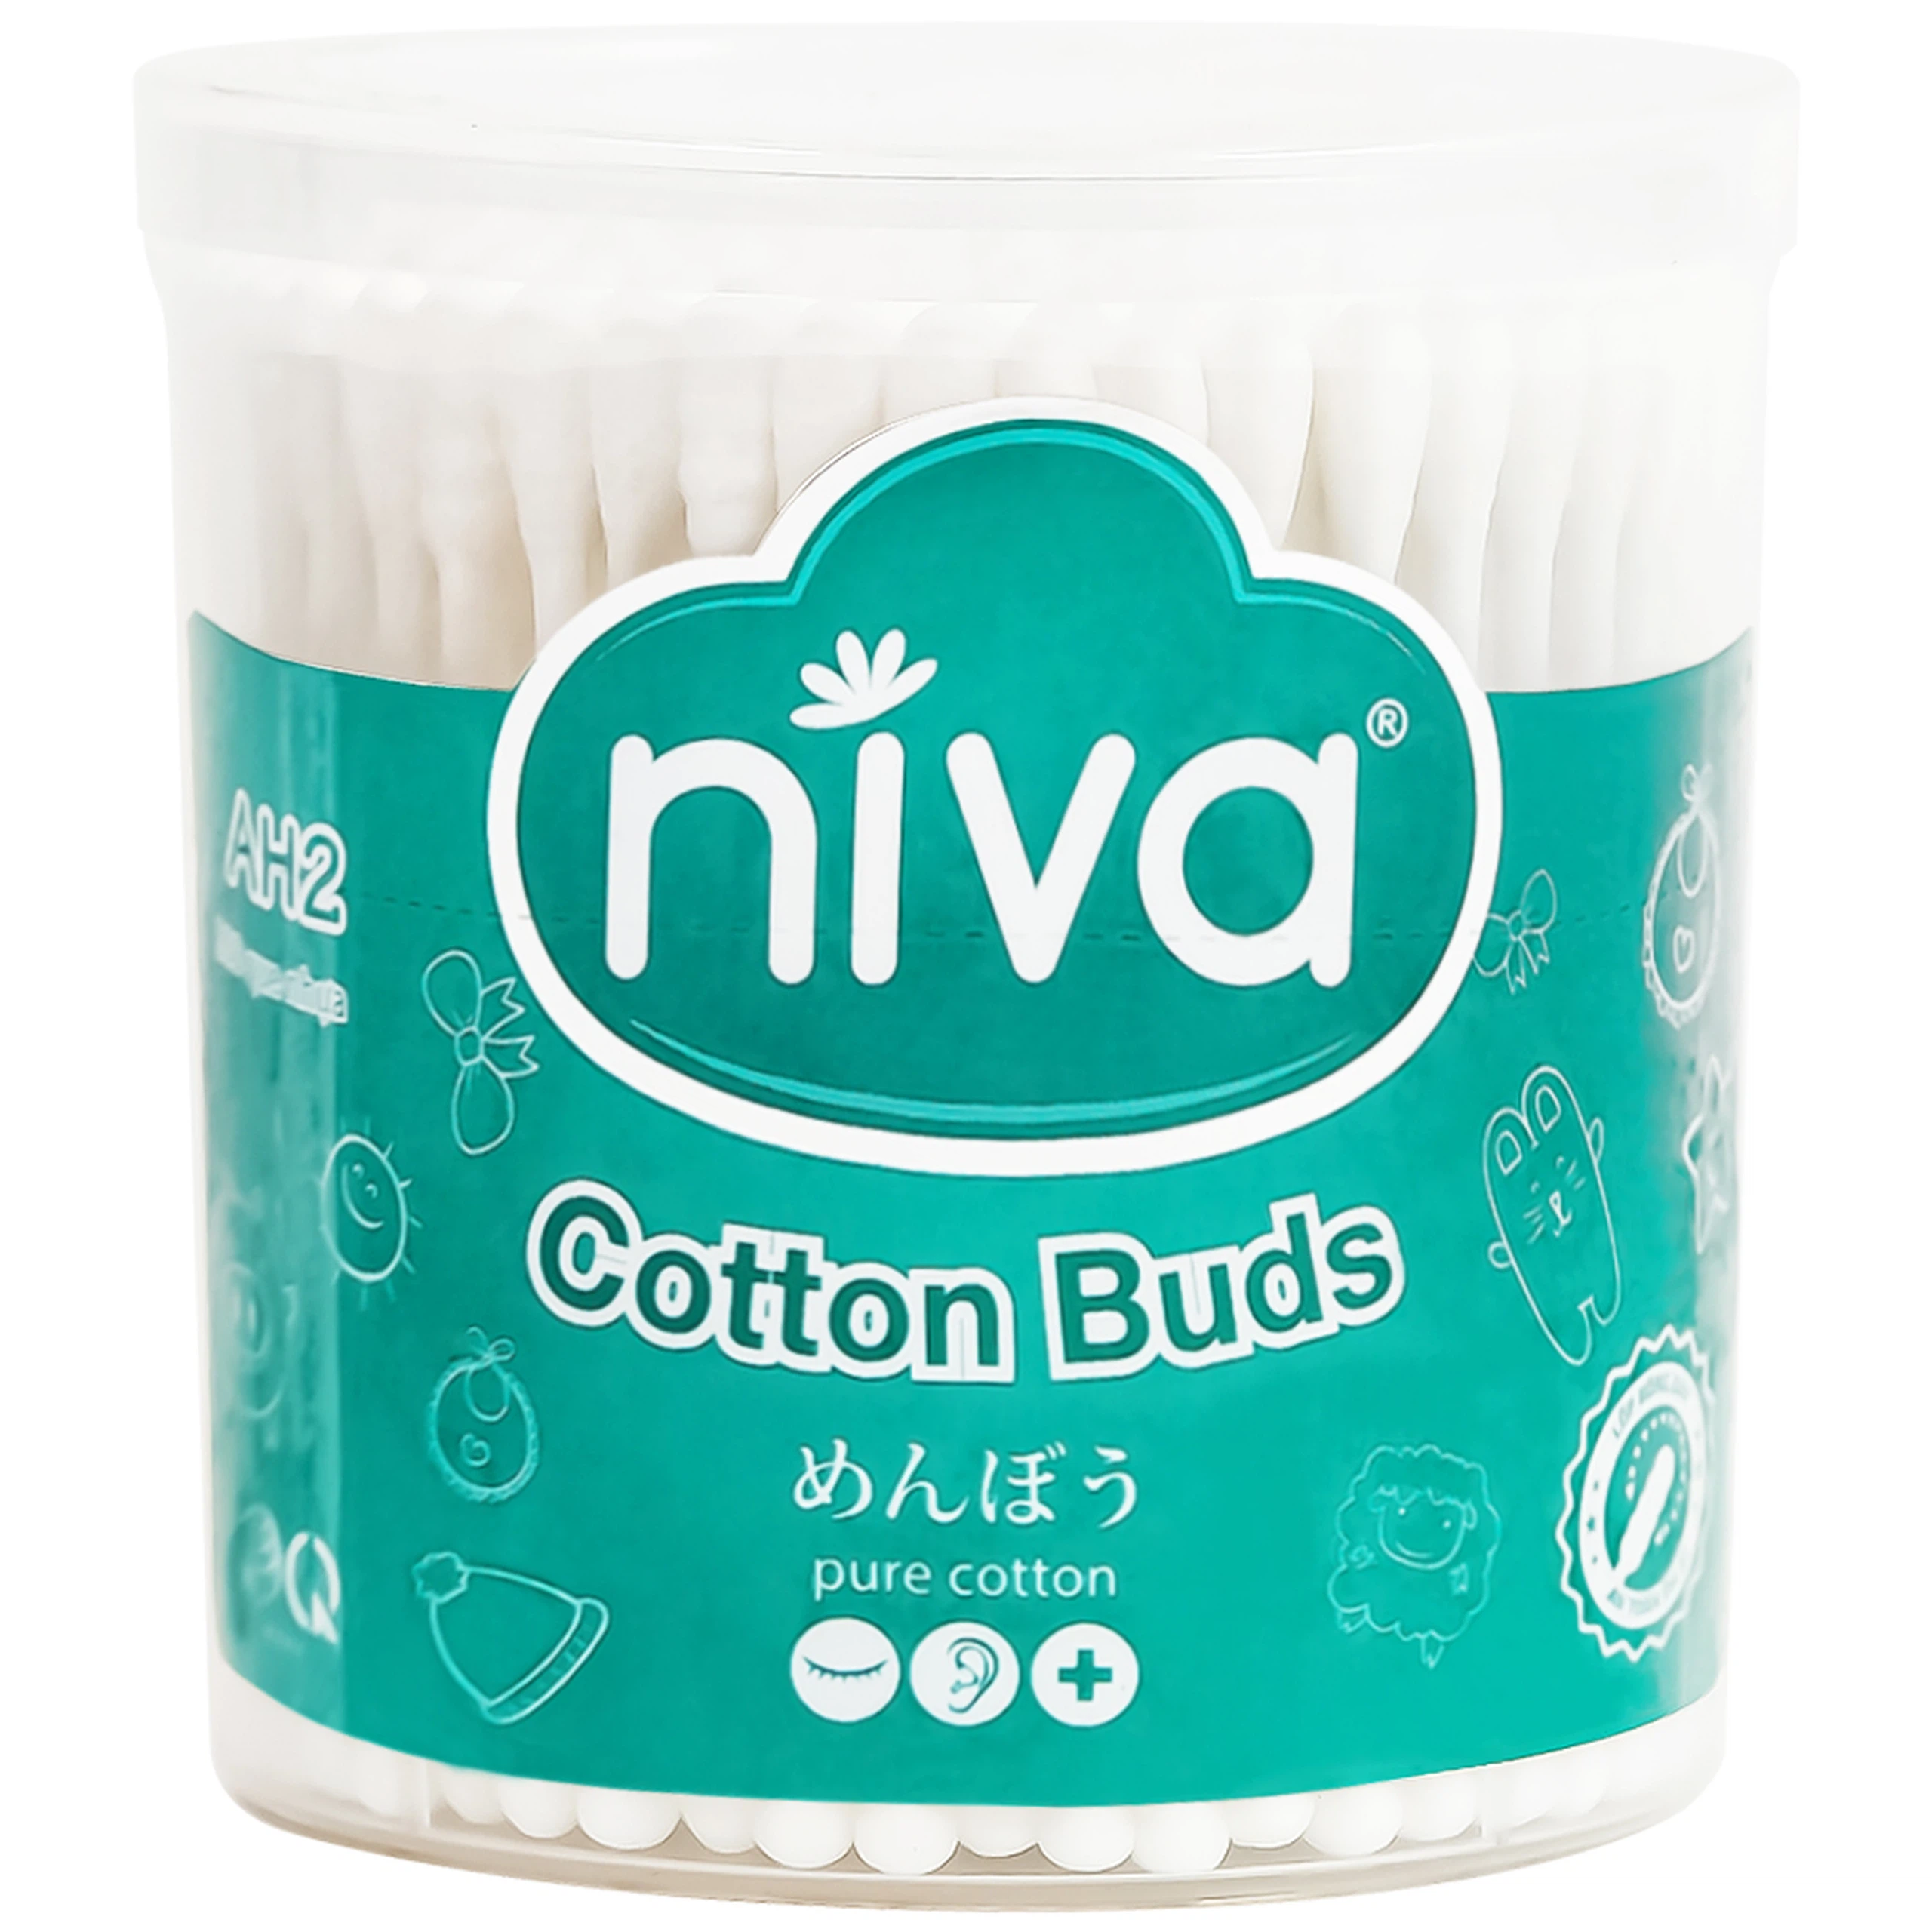 Tăm bông Niva AH2 Cotton Buds hũ xoay 1 đầu tròn 1 đầu xoắn vệ sinh tai, mũi, vệ sinh cá nhân, vết thương (200 que)